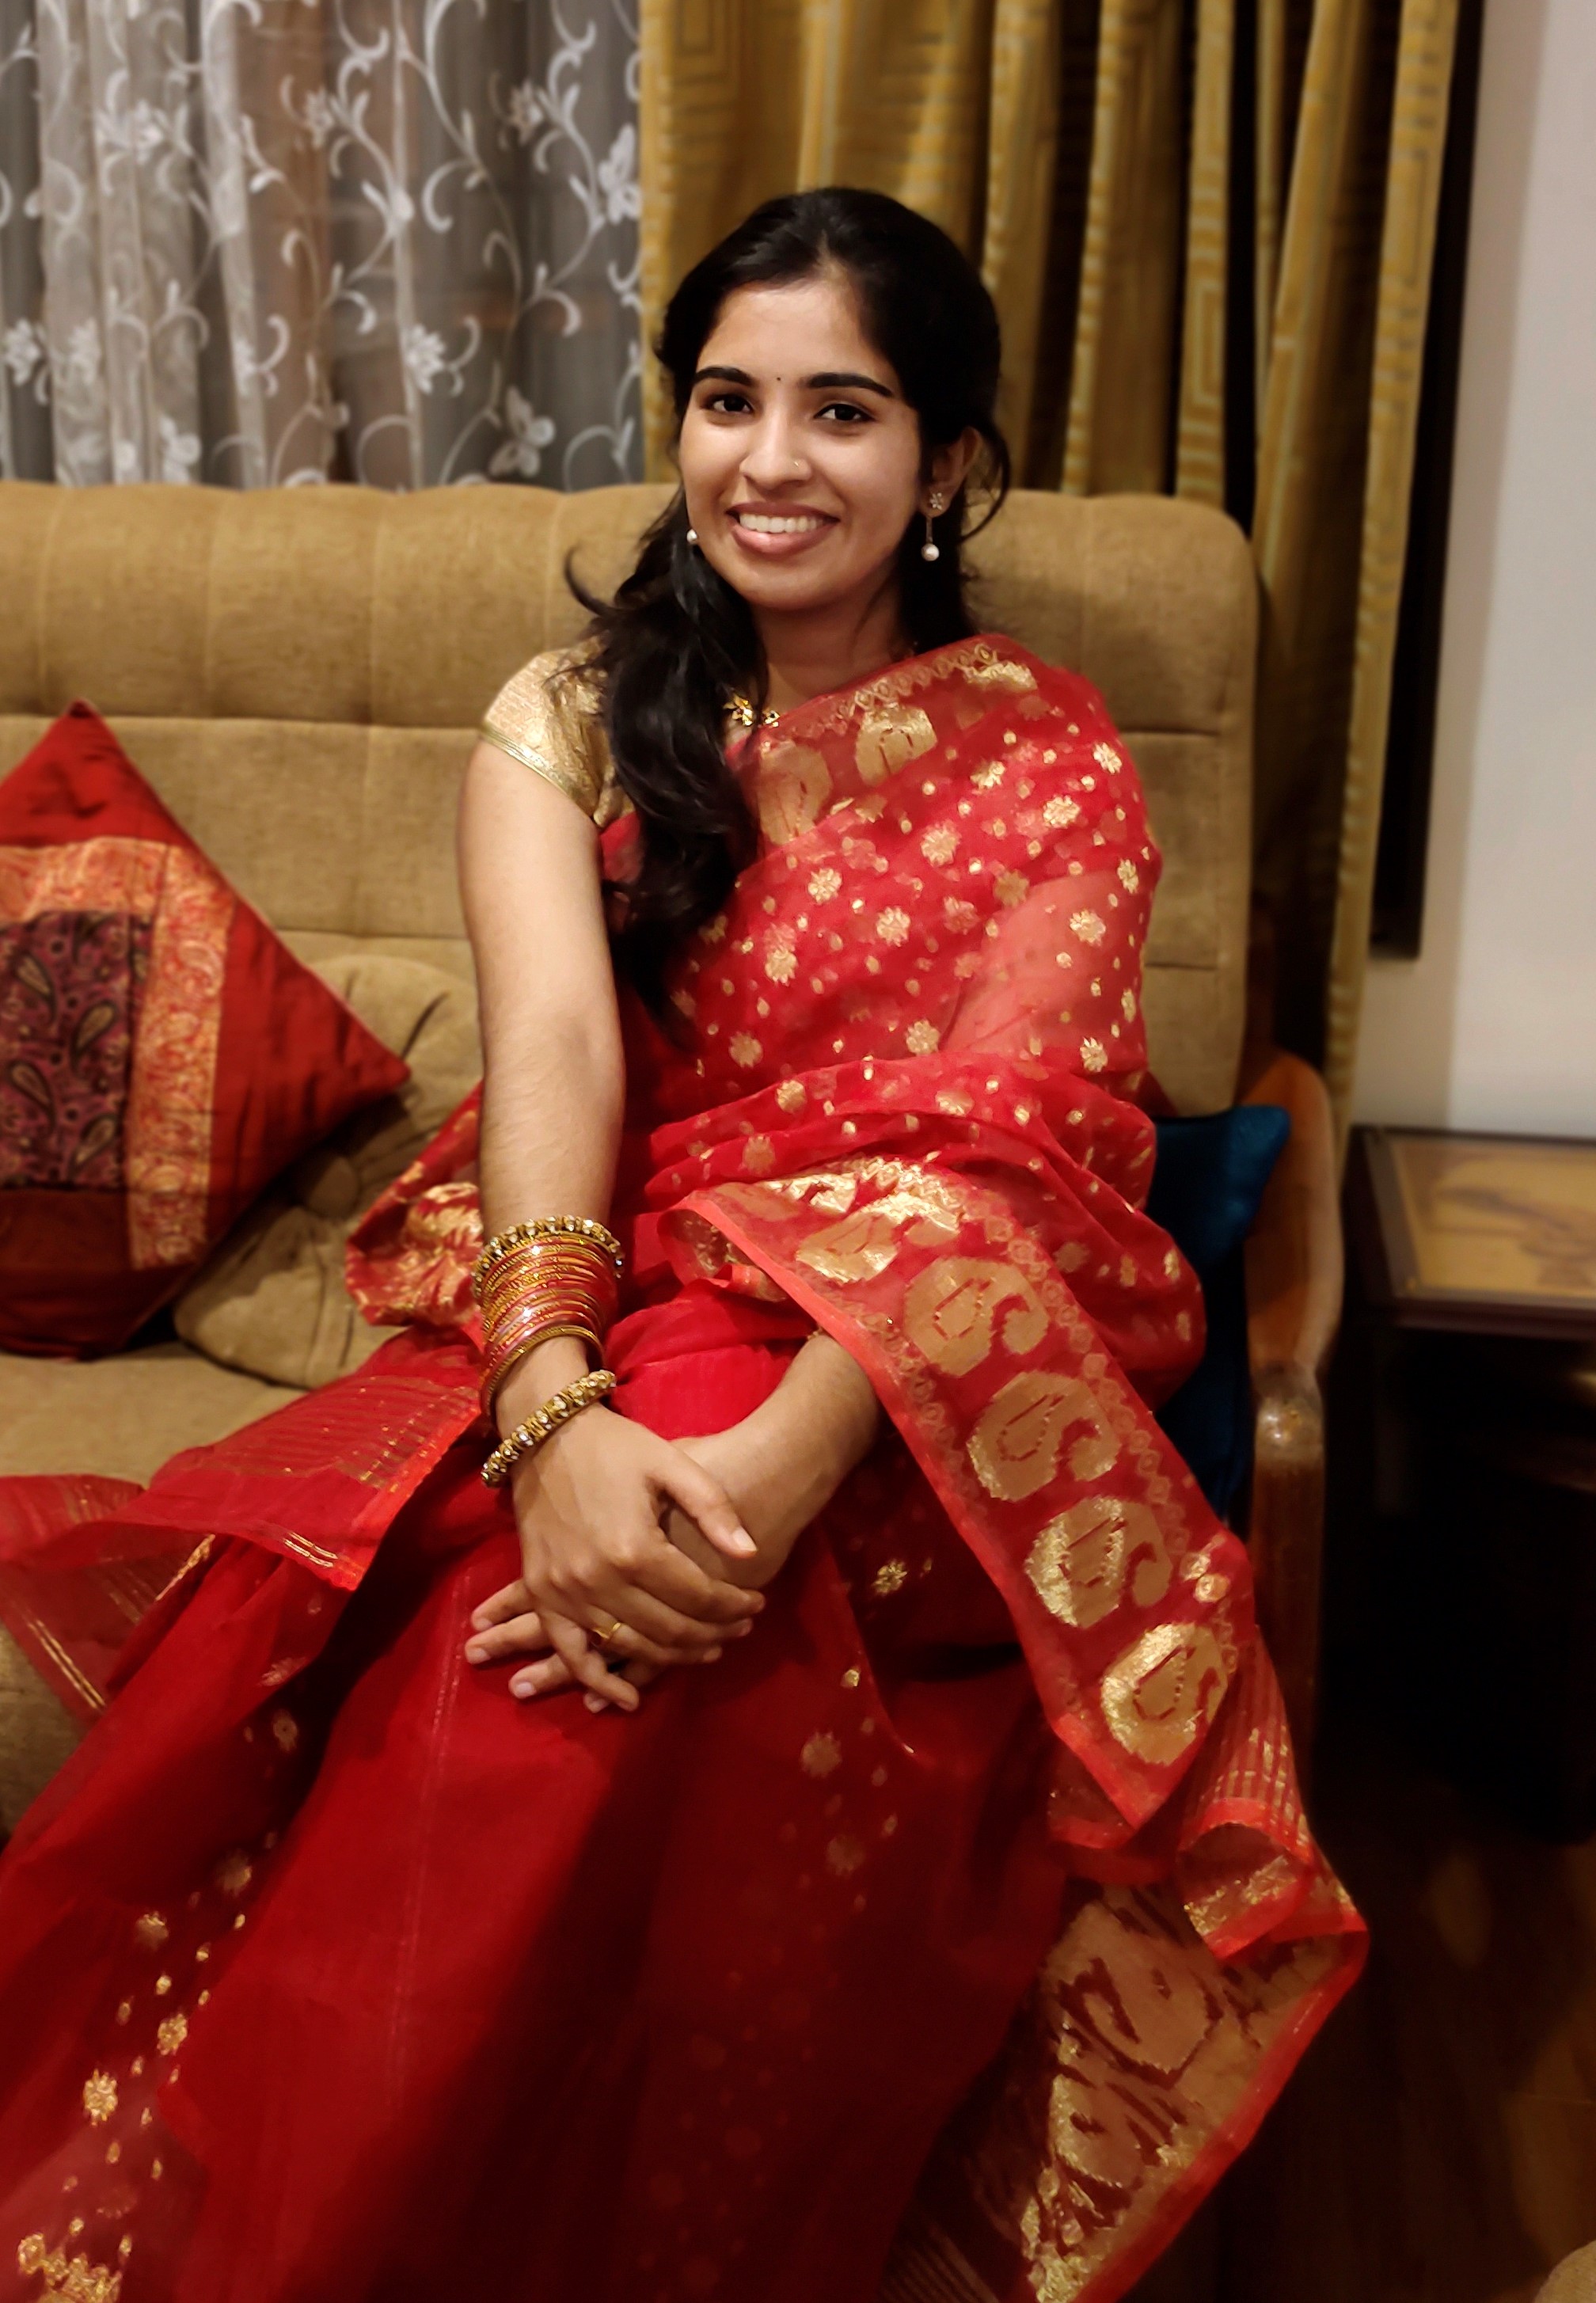 Kerala Malayali Matrimony Bride, customer reference - UK2023598855